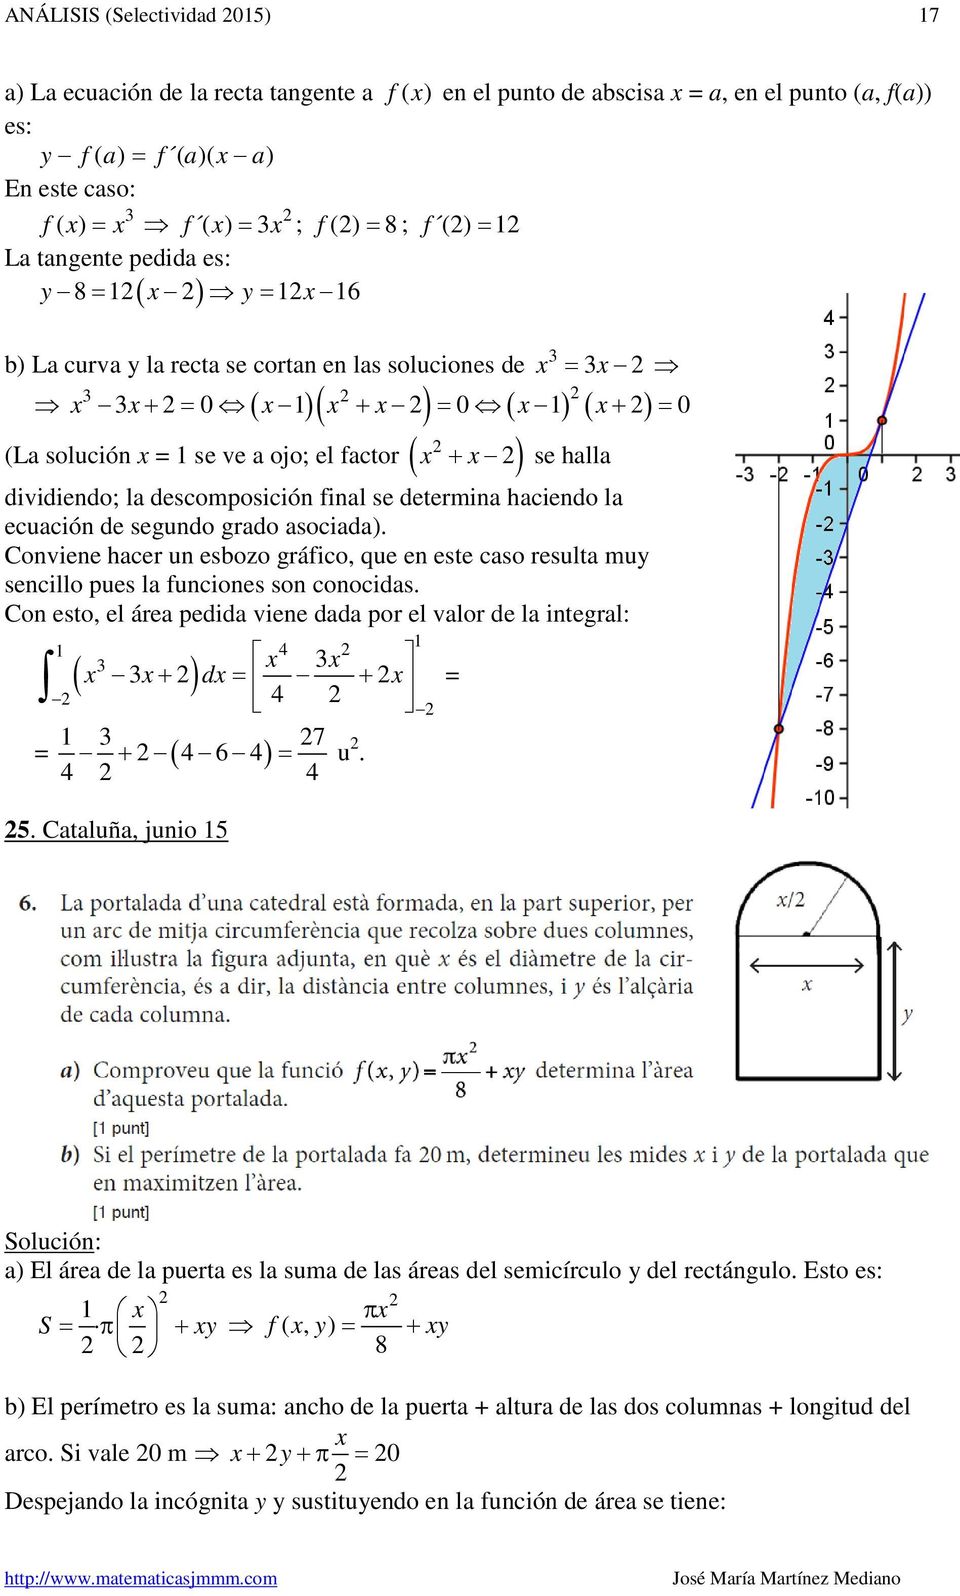 asociada) Convin hacr un sbozo gráfico, qu n st caso rsulta muy sncillo pus la funcions son conocidas Con sto, l ára pdida vin dada por l valor d la intgral: ( + ) d + 7 + u ( 6 ) 5 Cataluña, junio 5